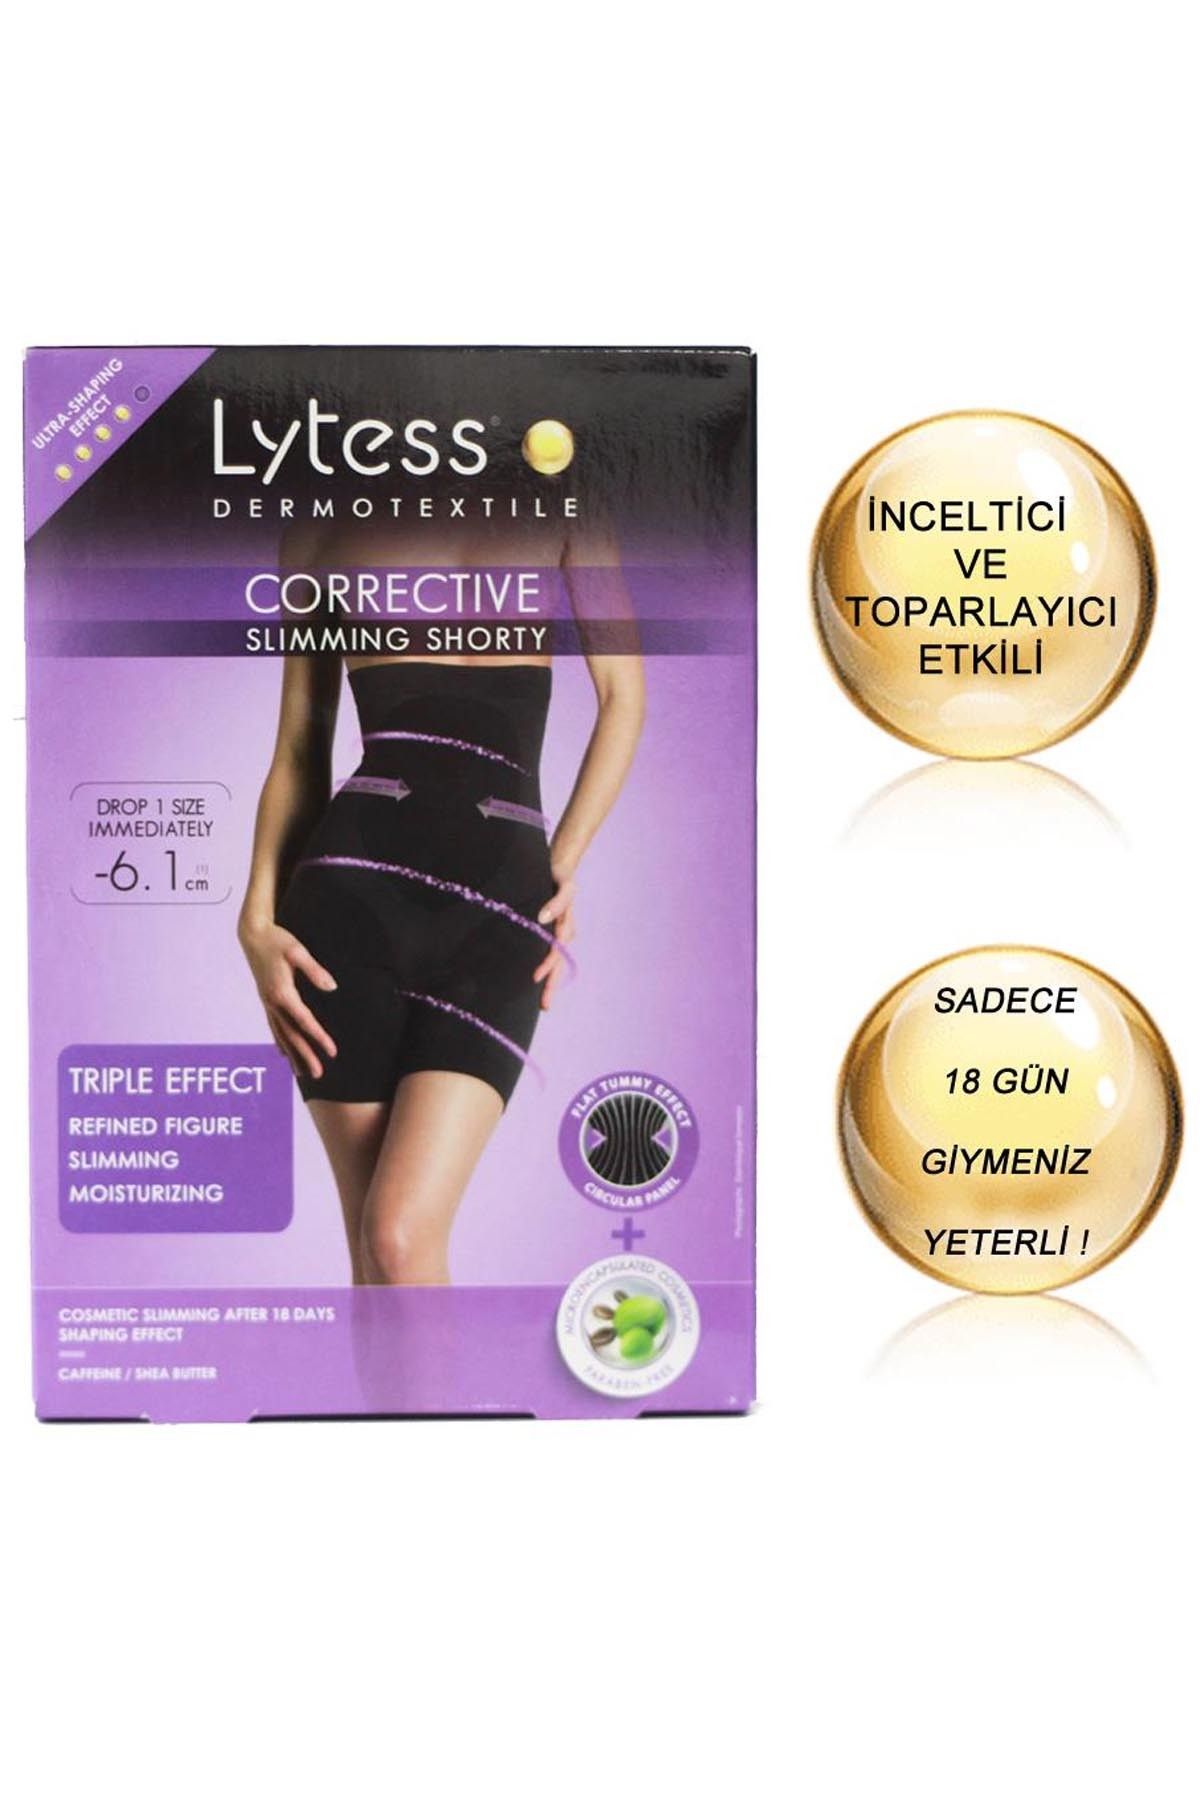 Lytess Corrective Slimming Shorty – Inceltici Ve Sıkılaştırıcı Etkili Karın-bacak Korsesi Nude/chair (L/xl)